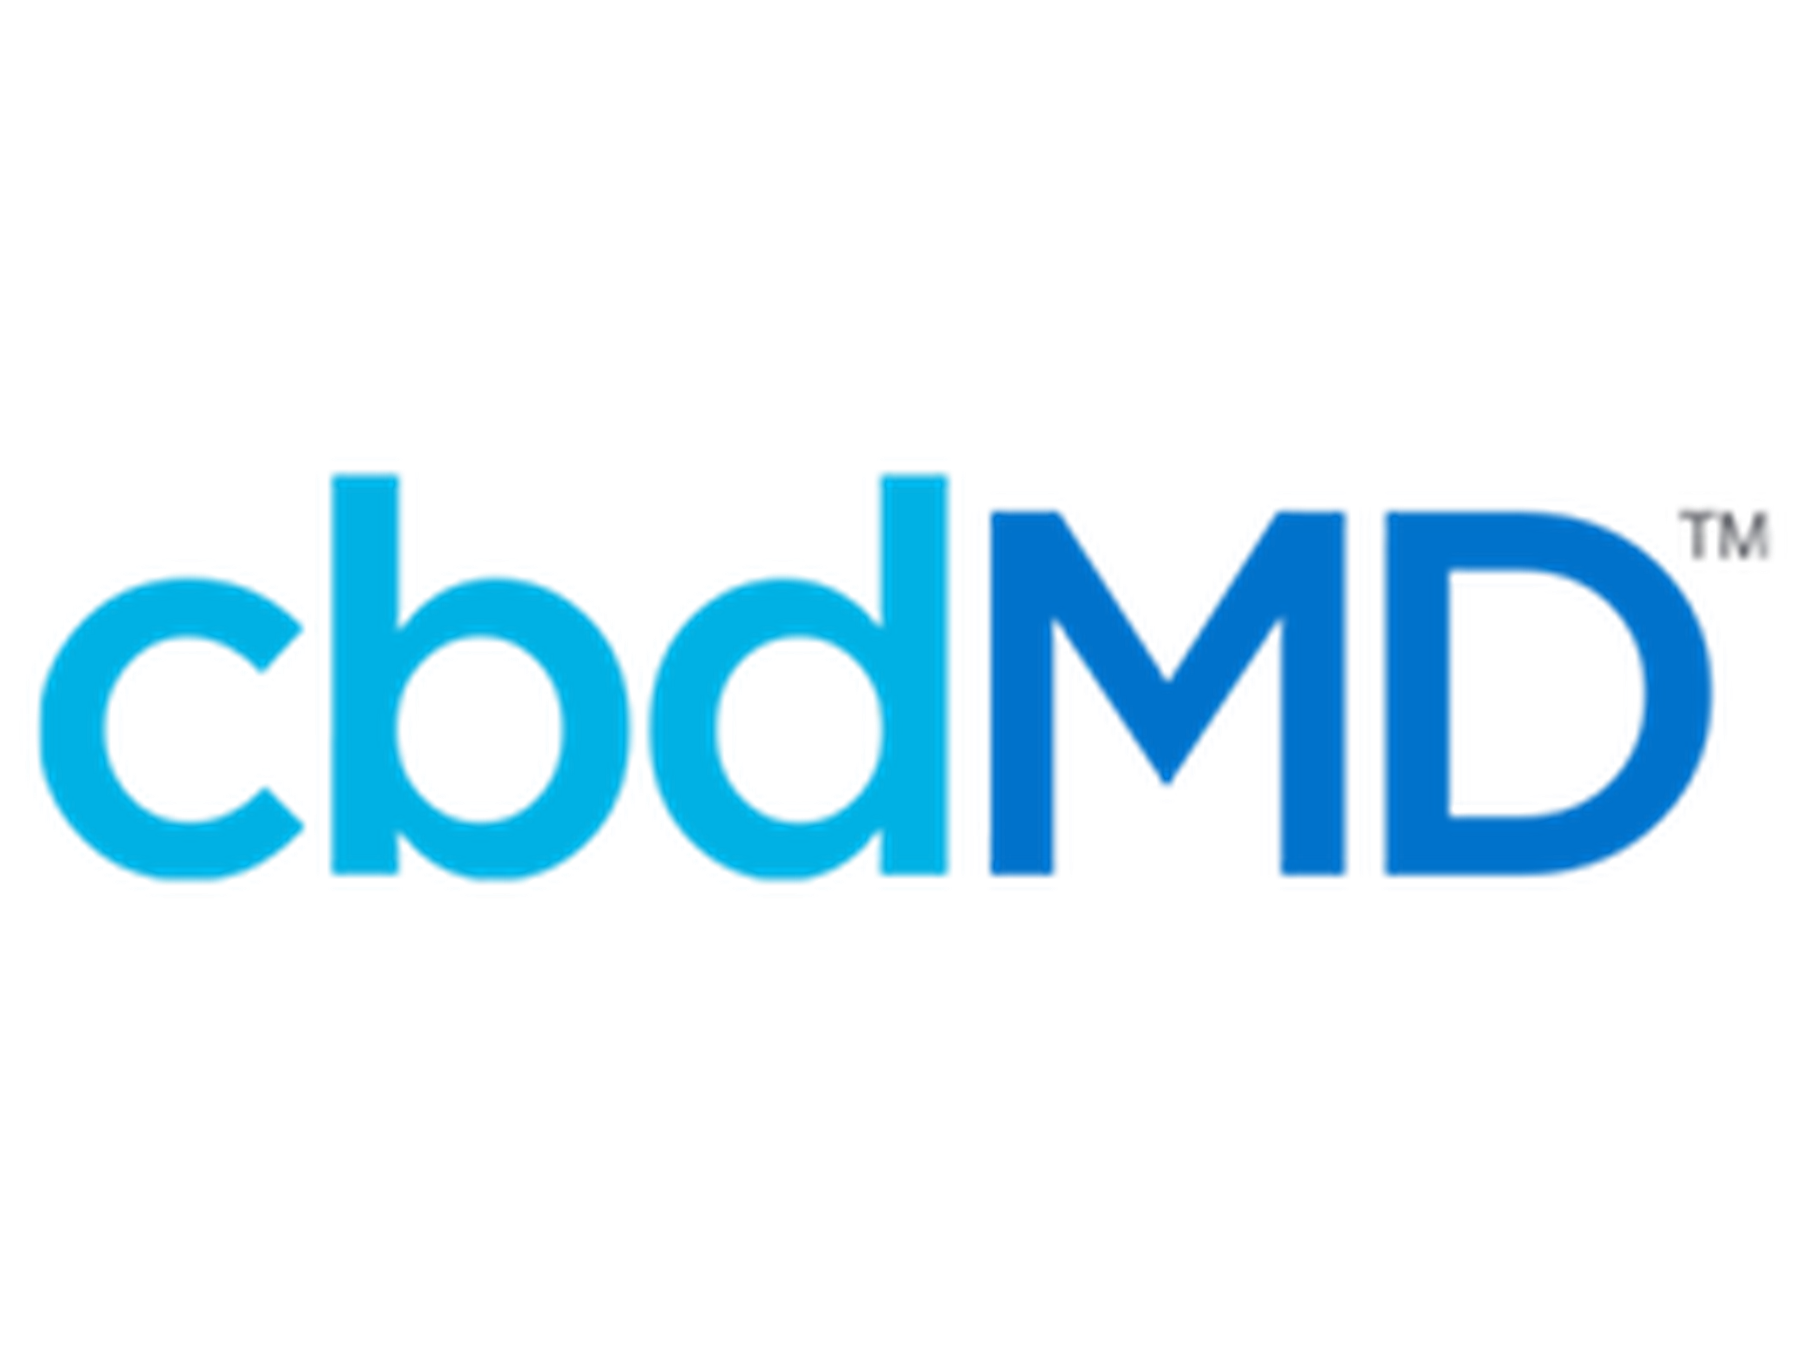 cbdMD Coupon Codes